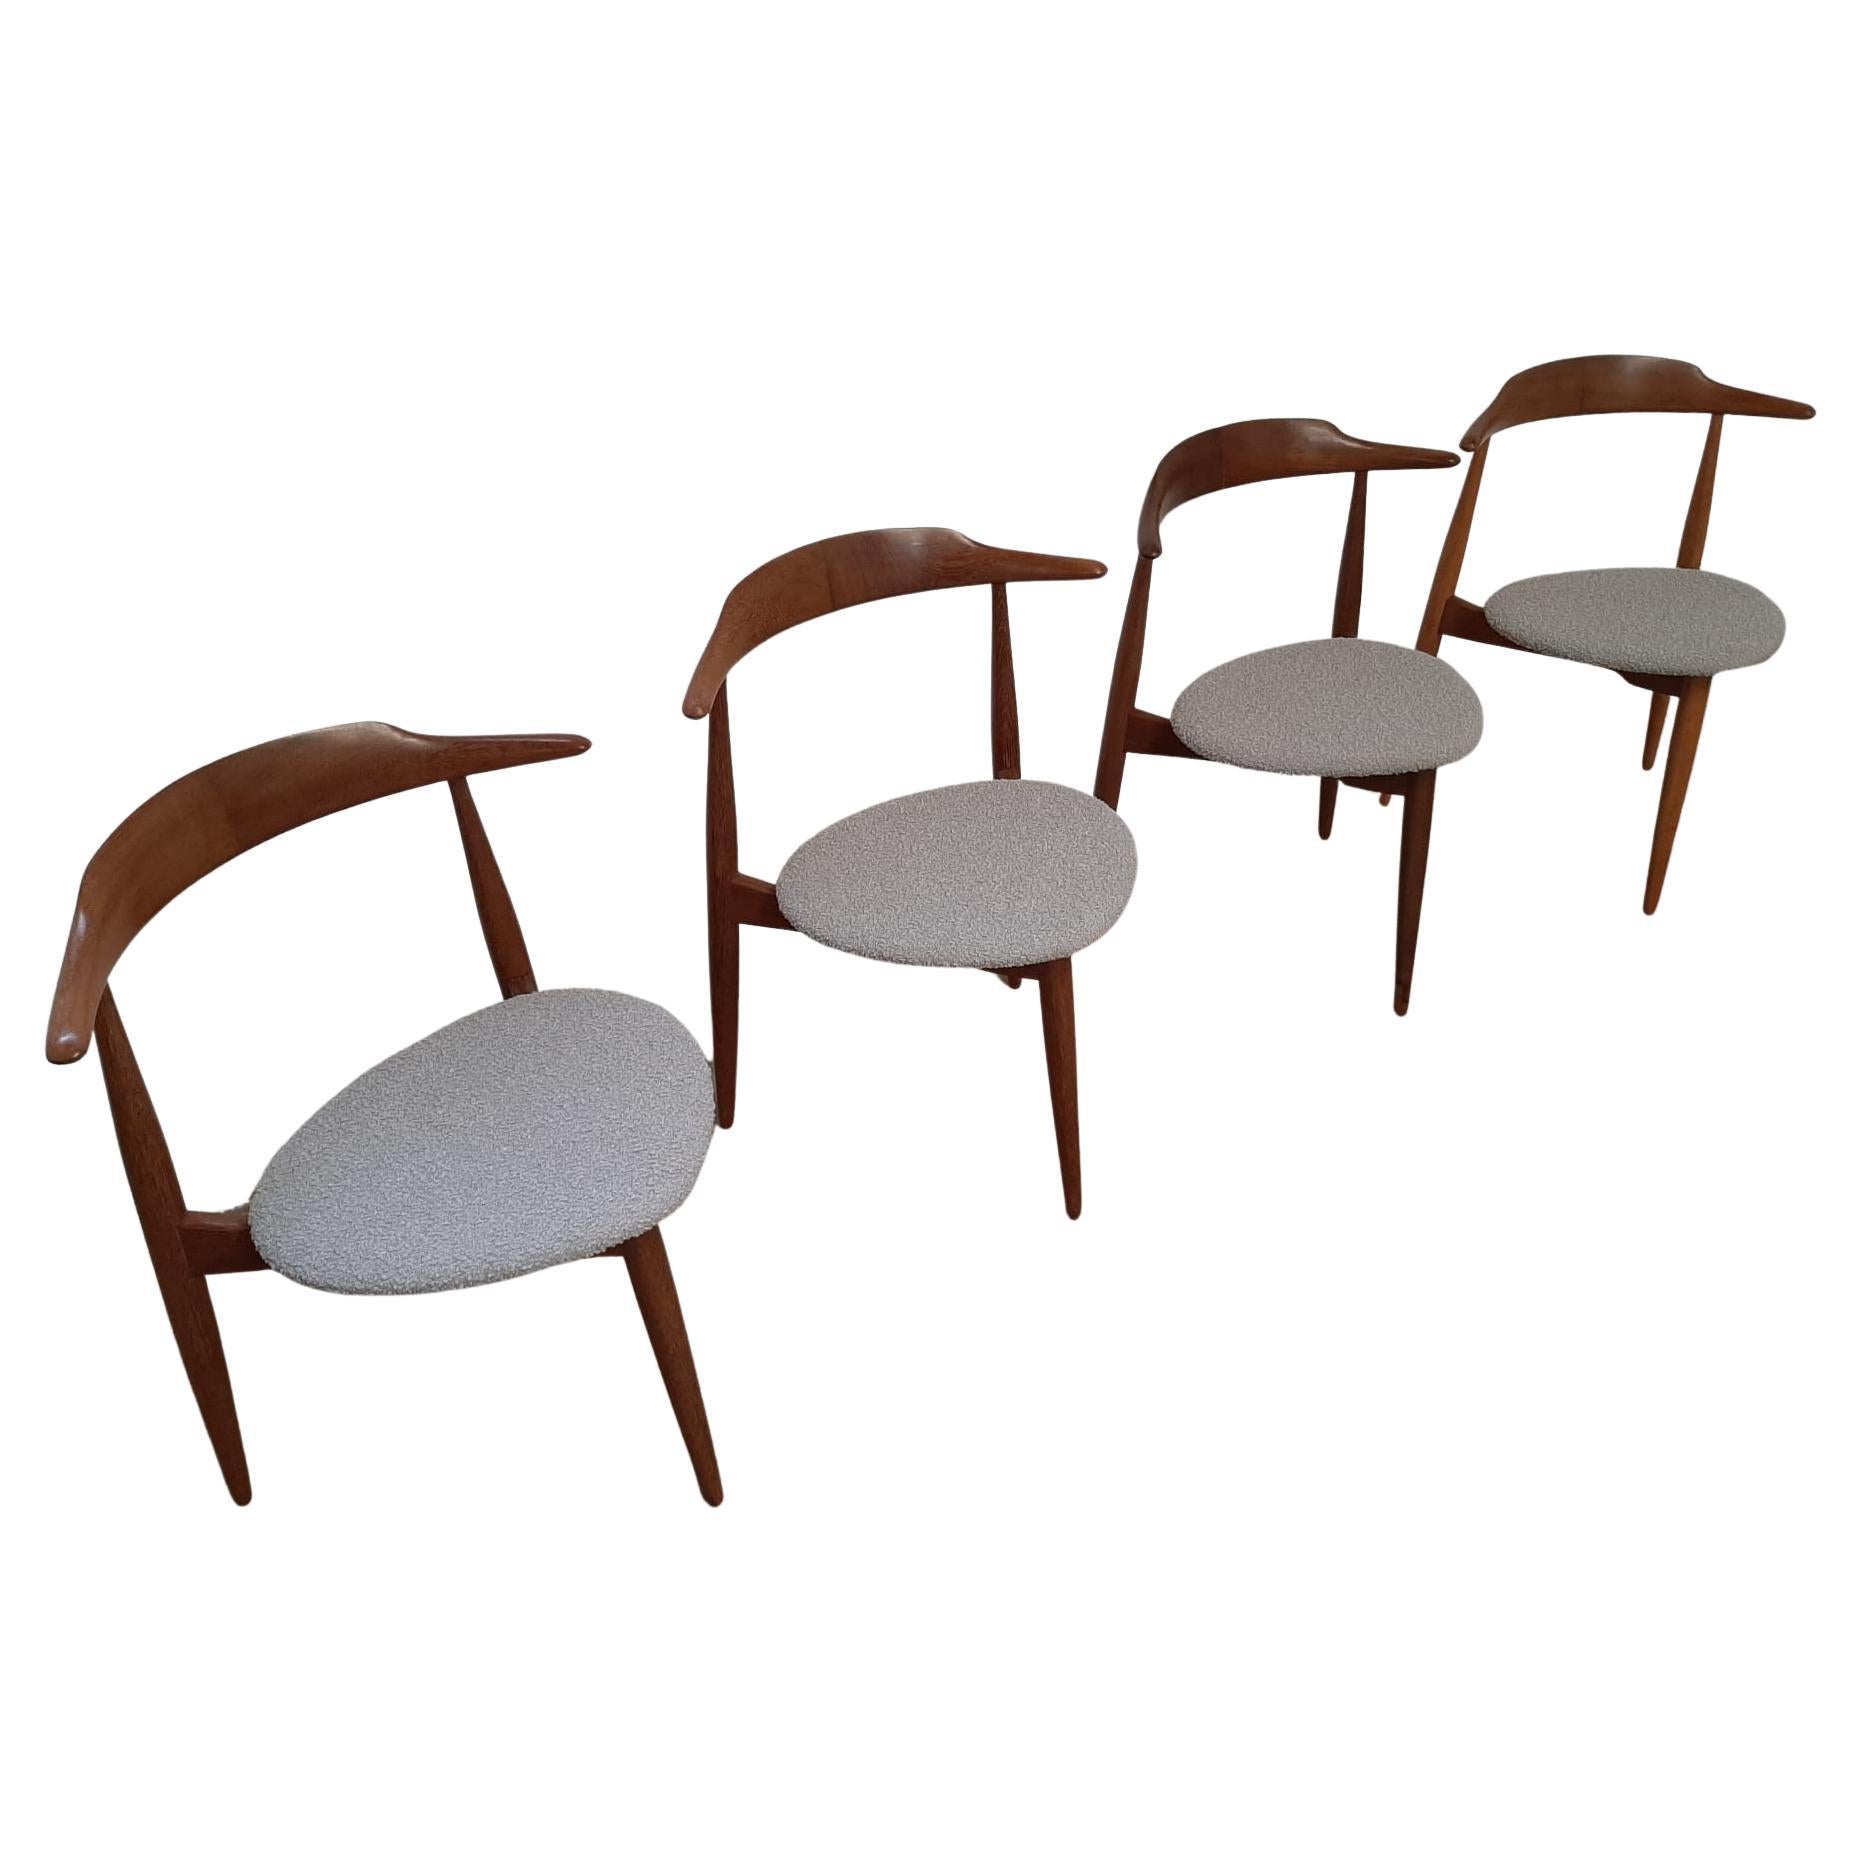 Hans J. Wegner Style Three-Legged Chair, Denmark 1960s For Sale